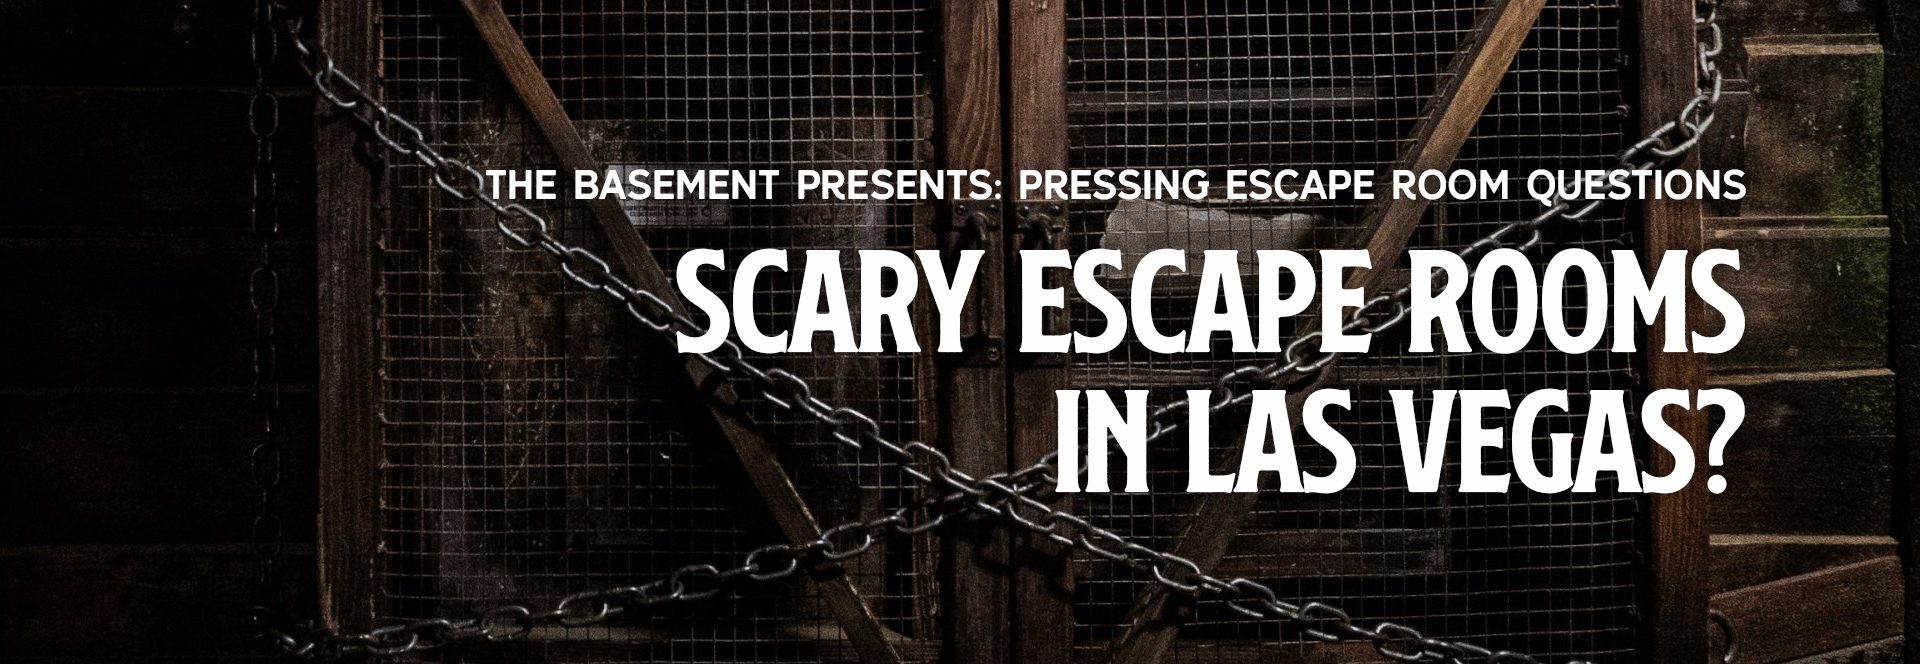 Scary Escape Rooms in Las Vegas